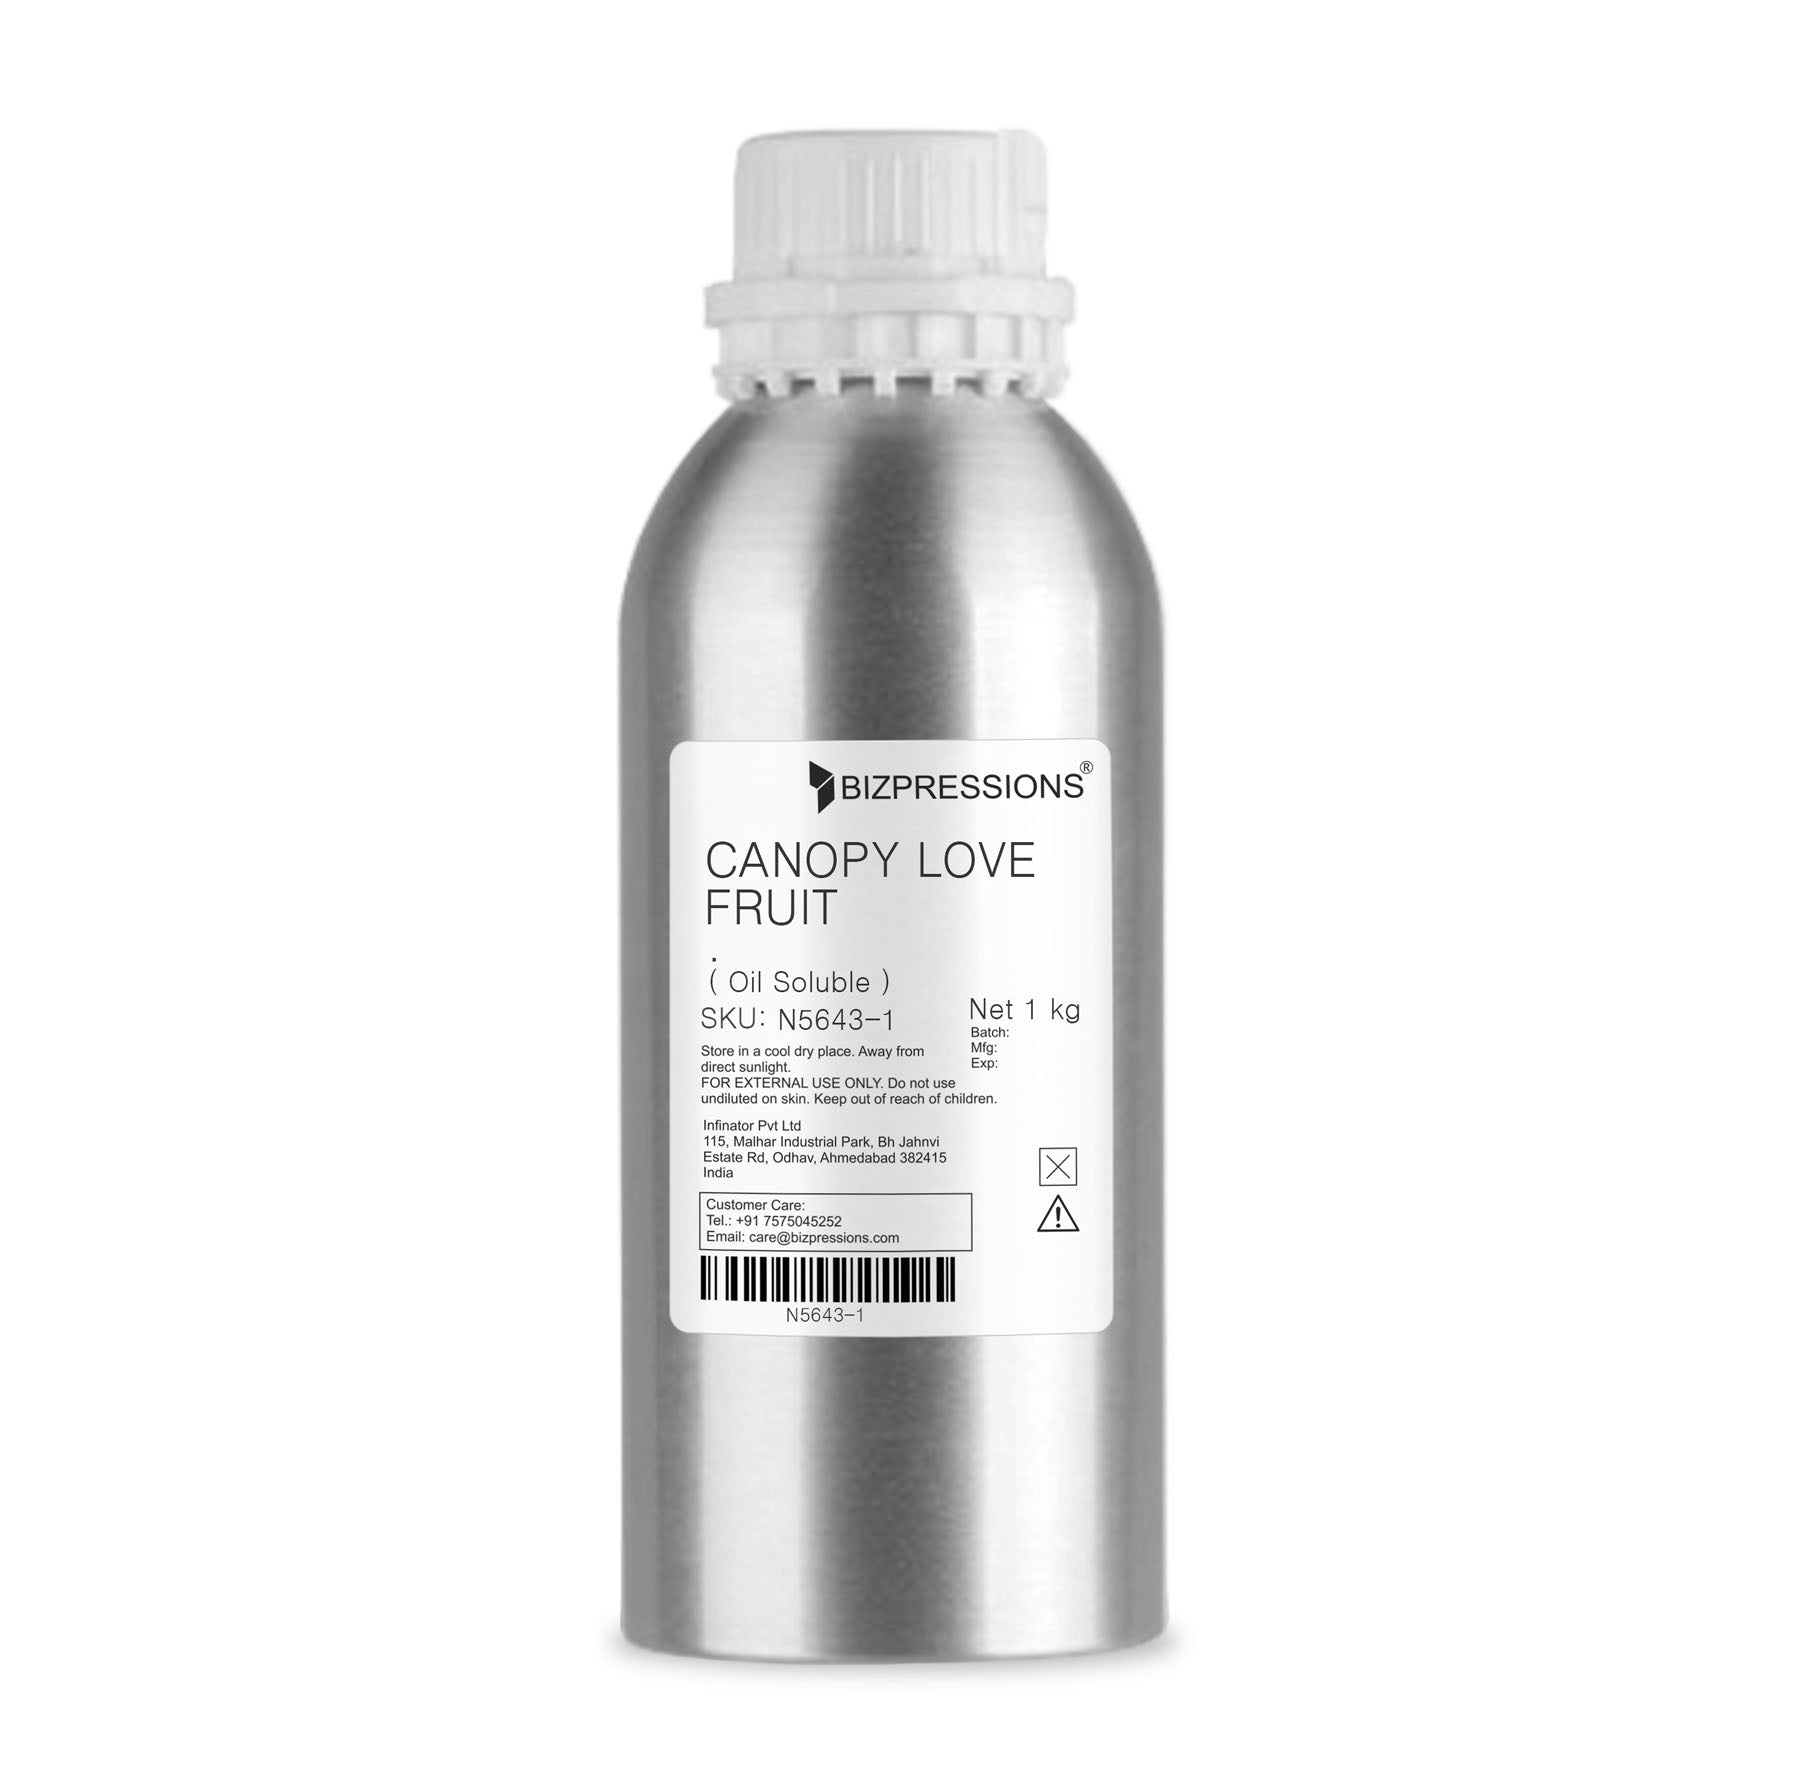 CANOPY LOVE FRUIT - Fragrance ( Oil Soluble ) - 1 kg